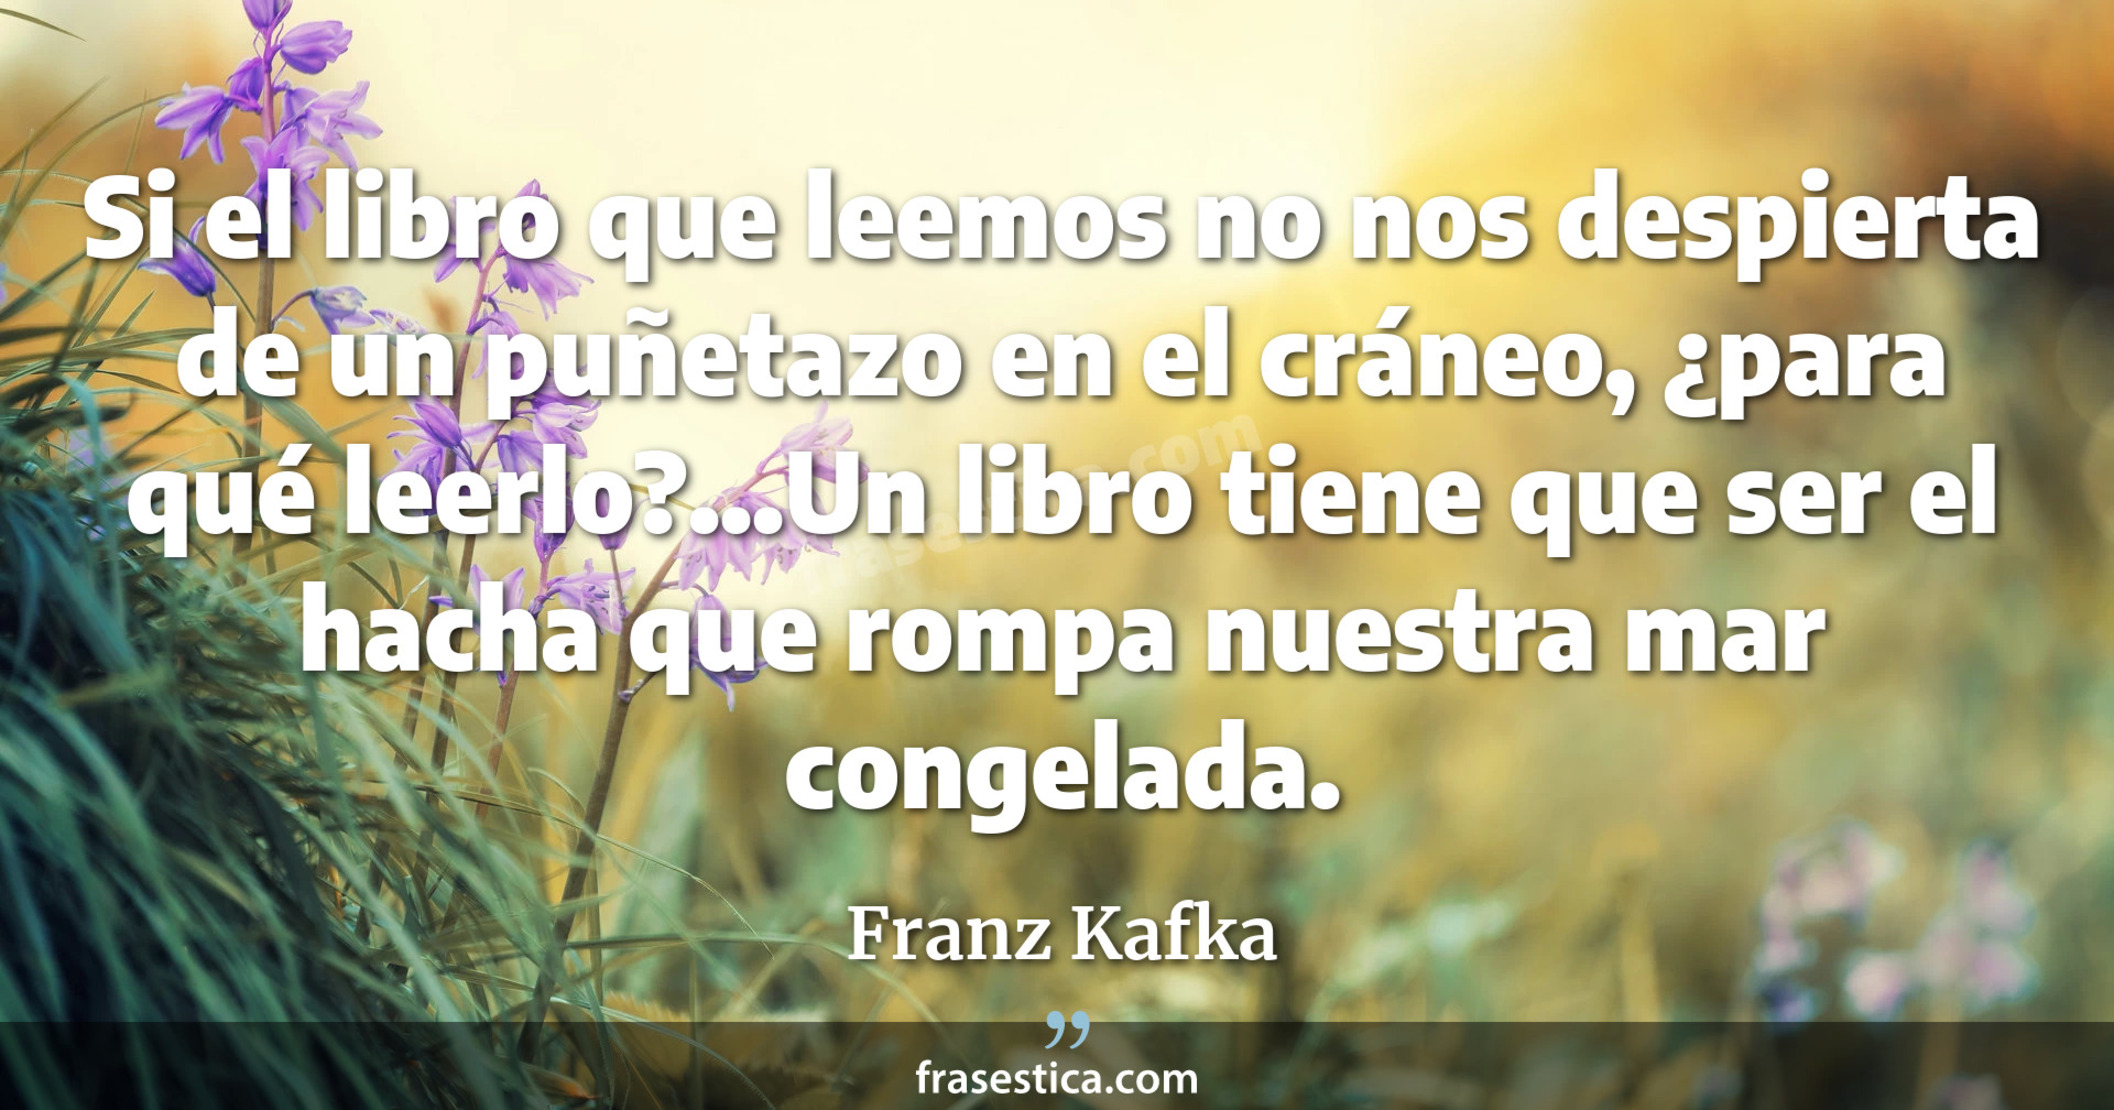 Si el libro que leemos no nos despierta de un puñetazo en el cráneo, ¿para qué leerlo?...Un libro tiene que ser el hacha que rompa nuestra mar congelada. - Franz Kafka